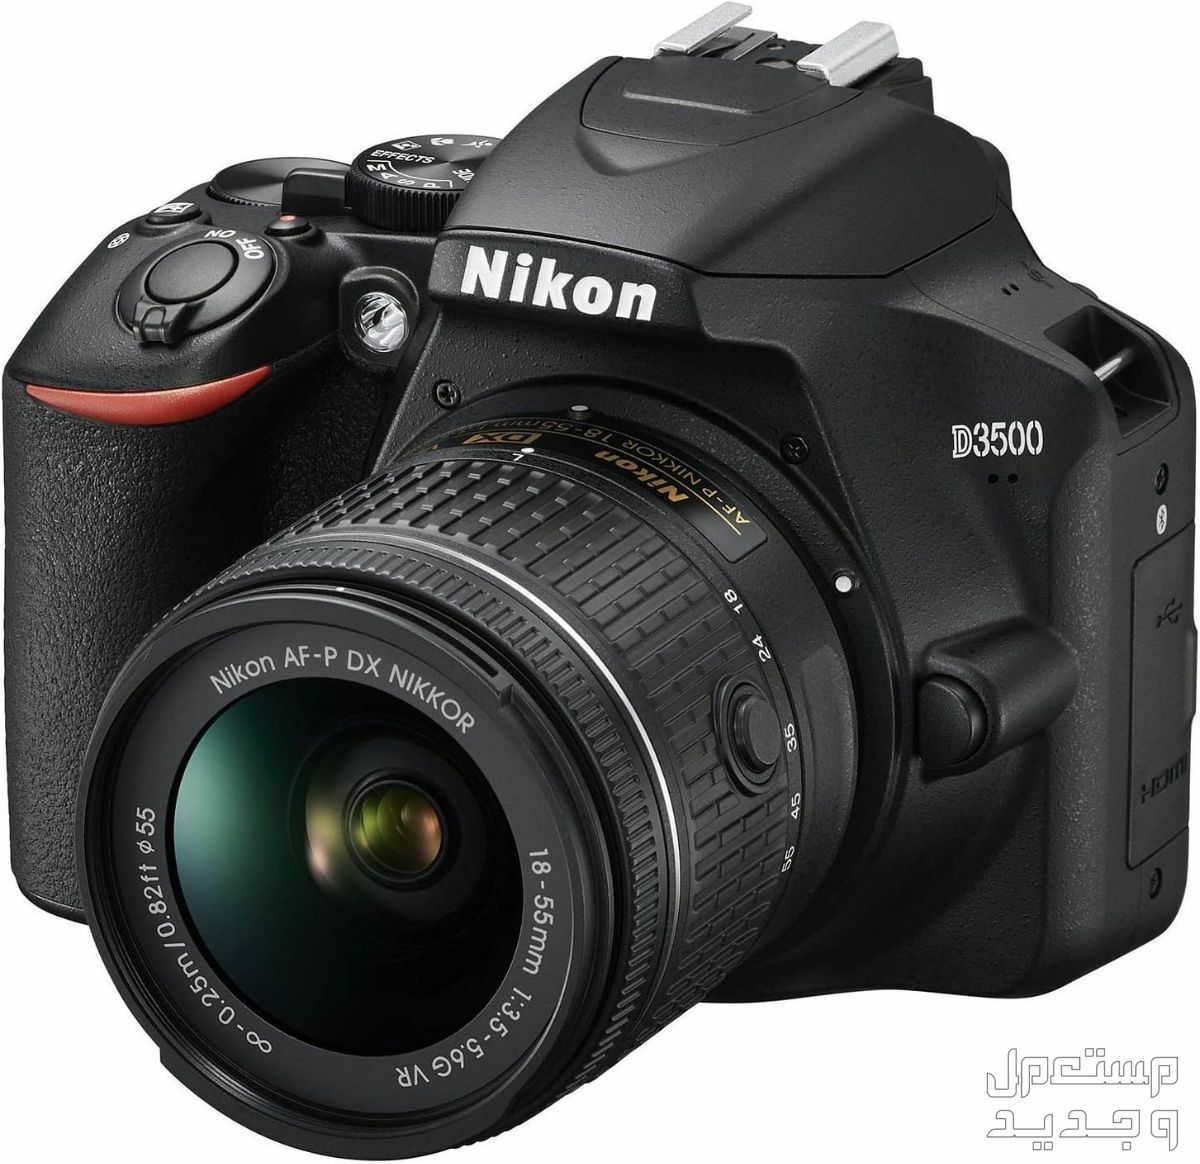 10 كاميرات تصوير ماركات عالمية بأسعار رخيصة في قطر مميزات كاميرا Nikon D3500